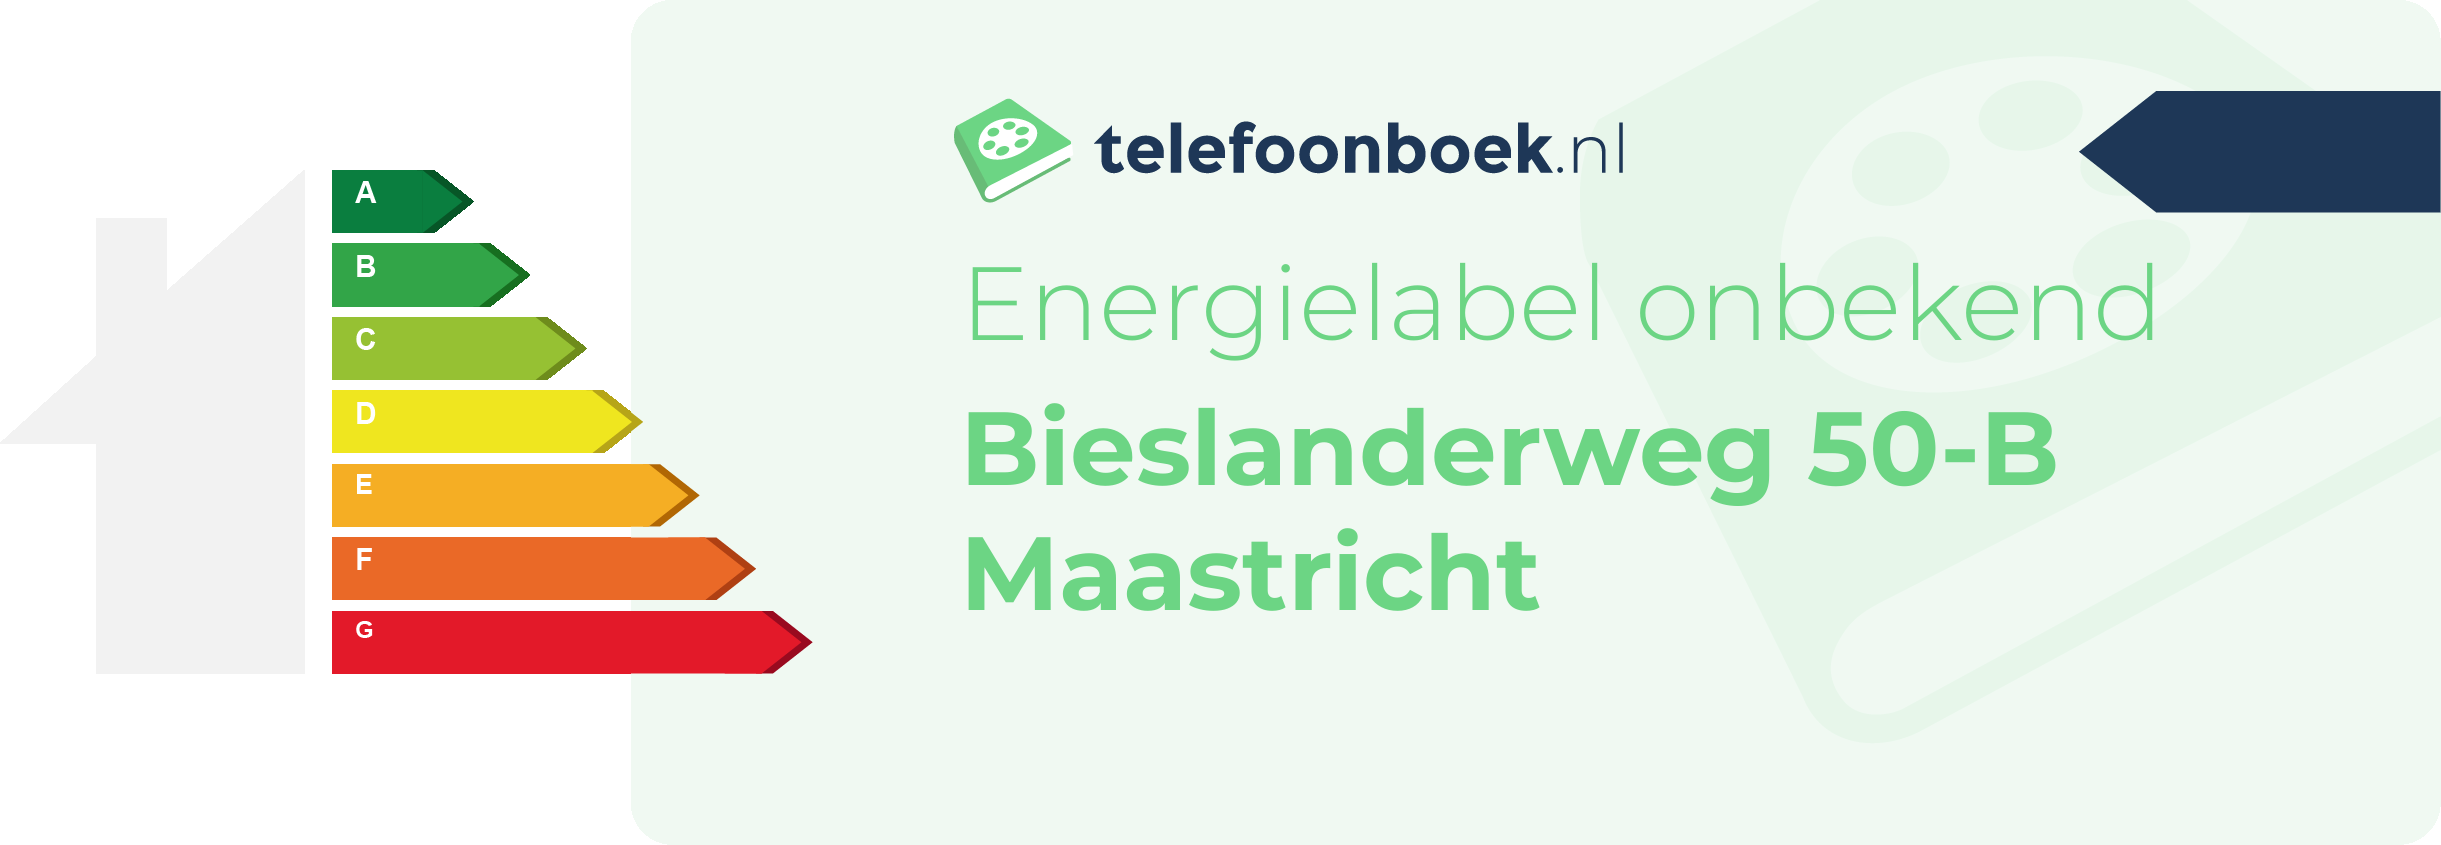 Energielabel Bieslanderweg 50-B Maastricht